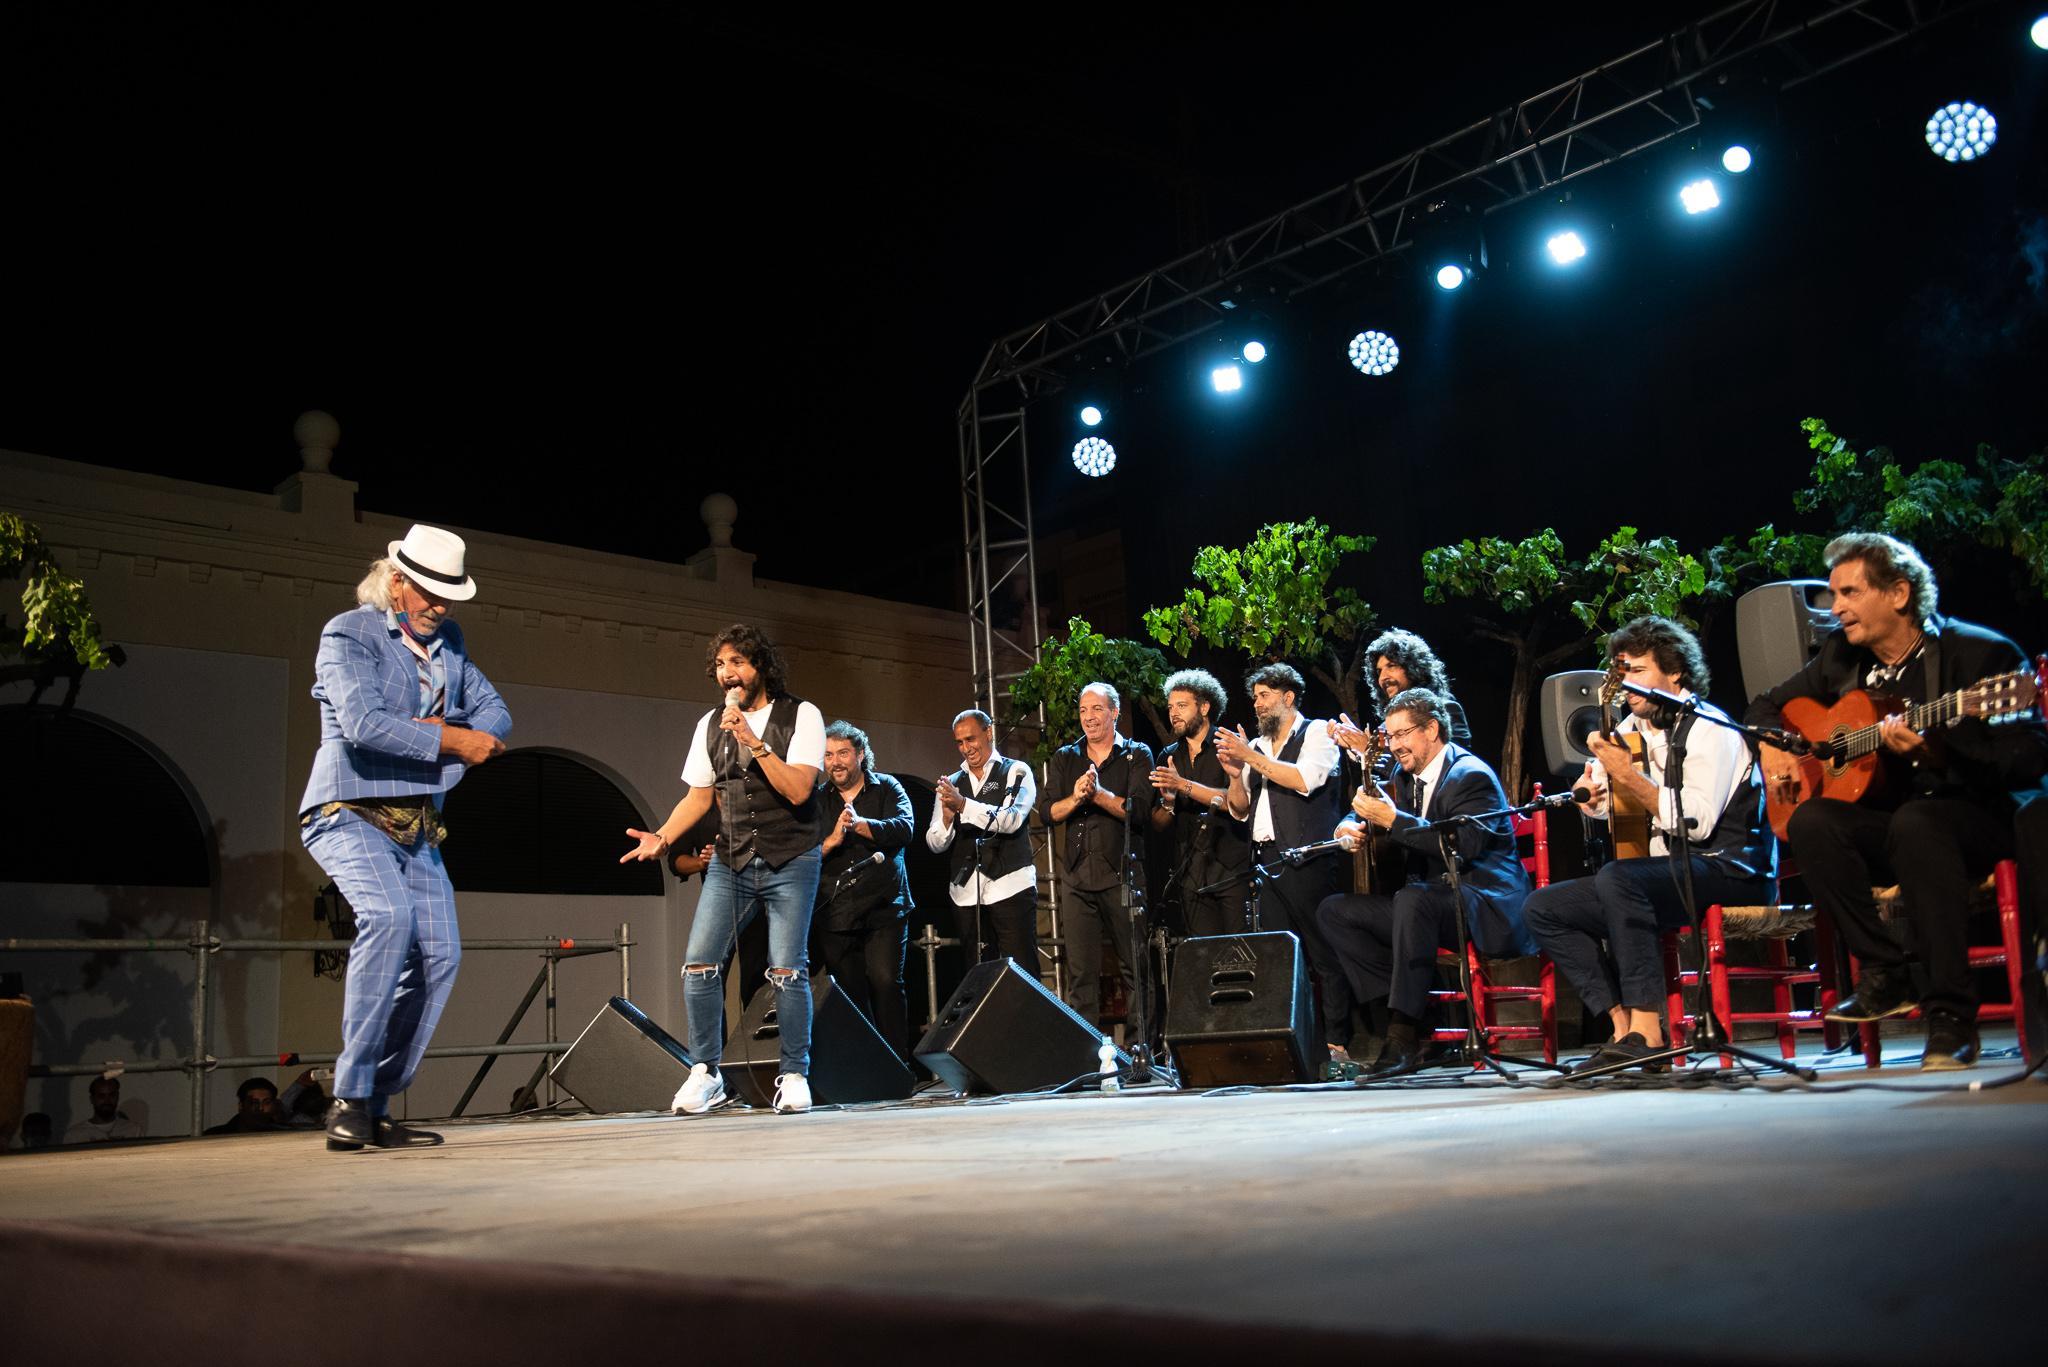 Rutas del flamenco en Andalucía: conoce la cuna de tu género favorito